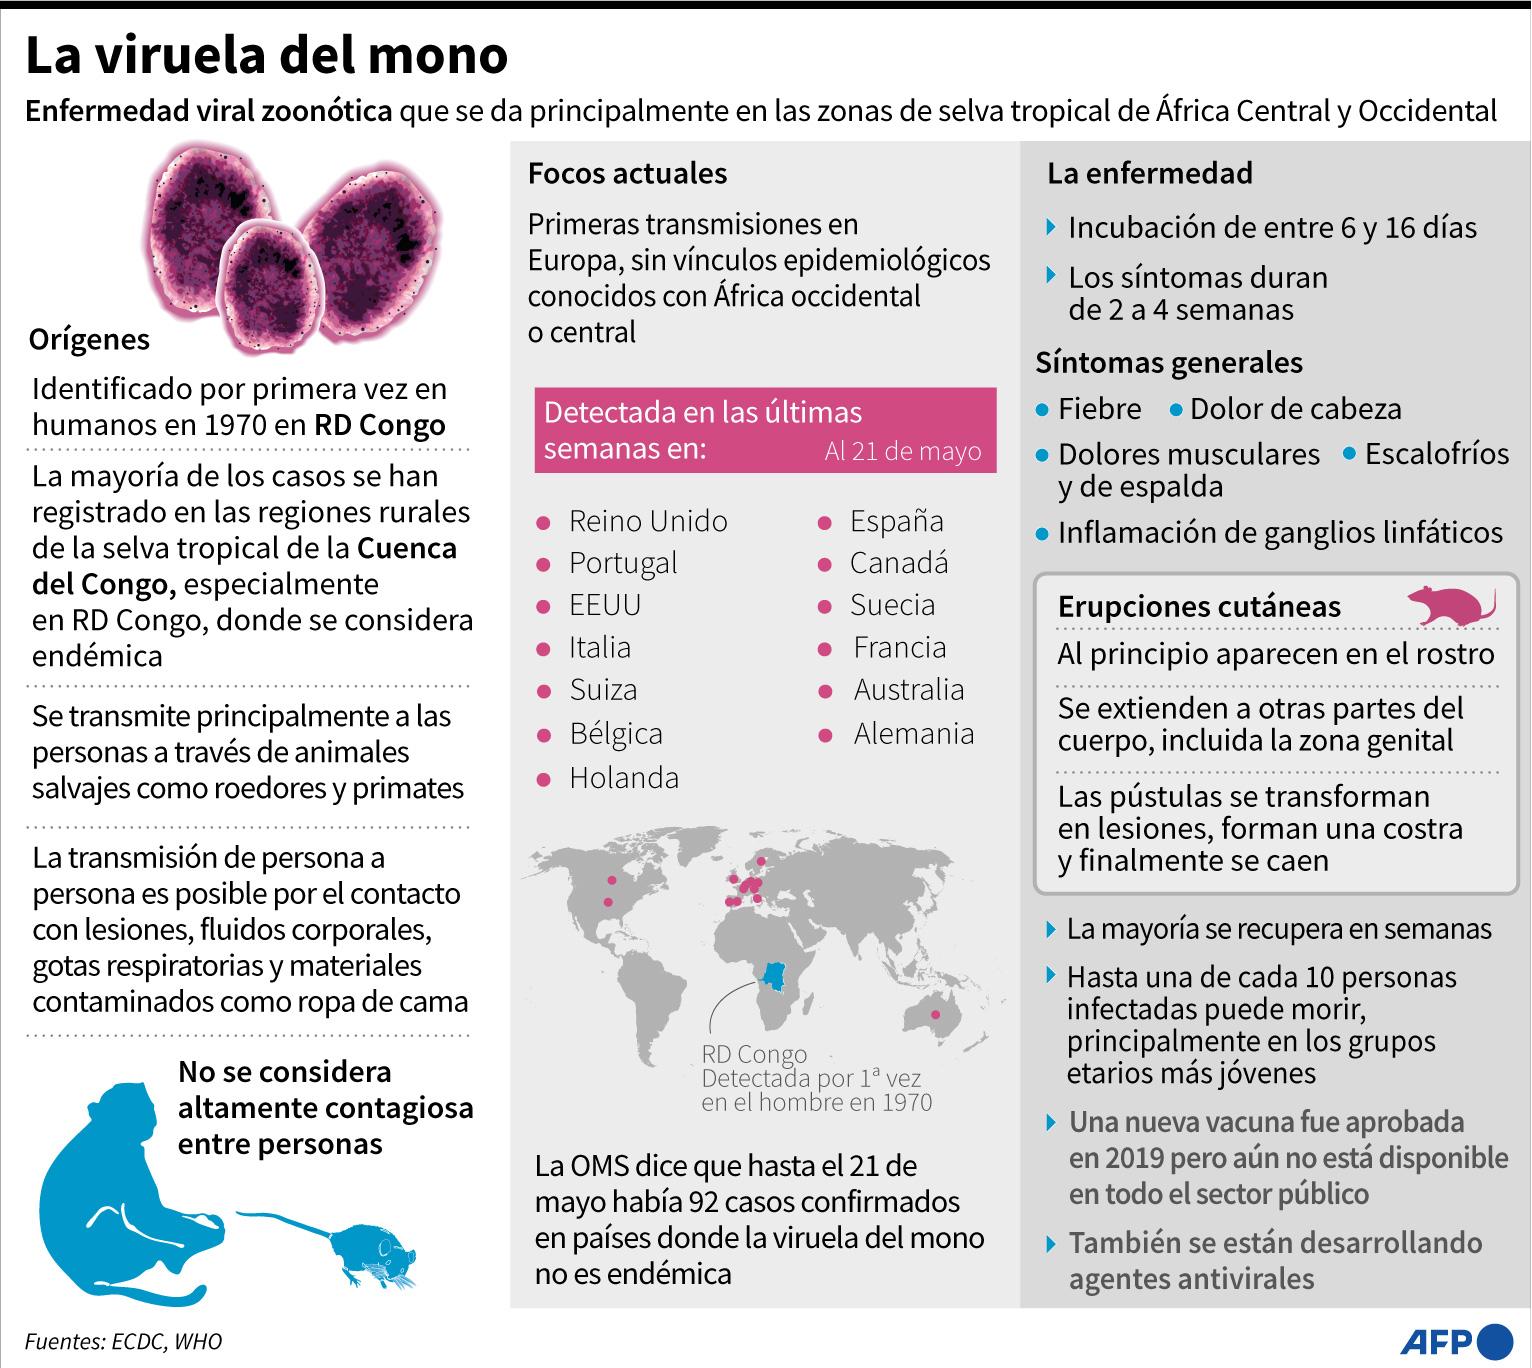 La OMS no cree que la viruela del mono se convierta en otra pandemia